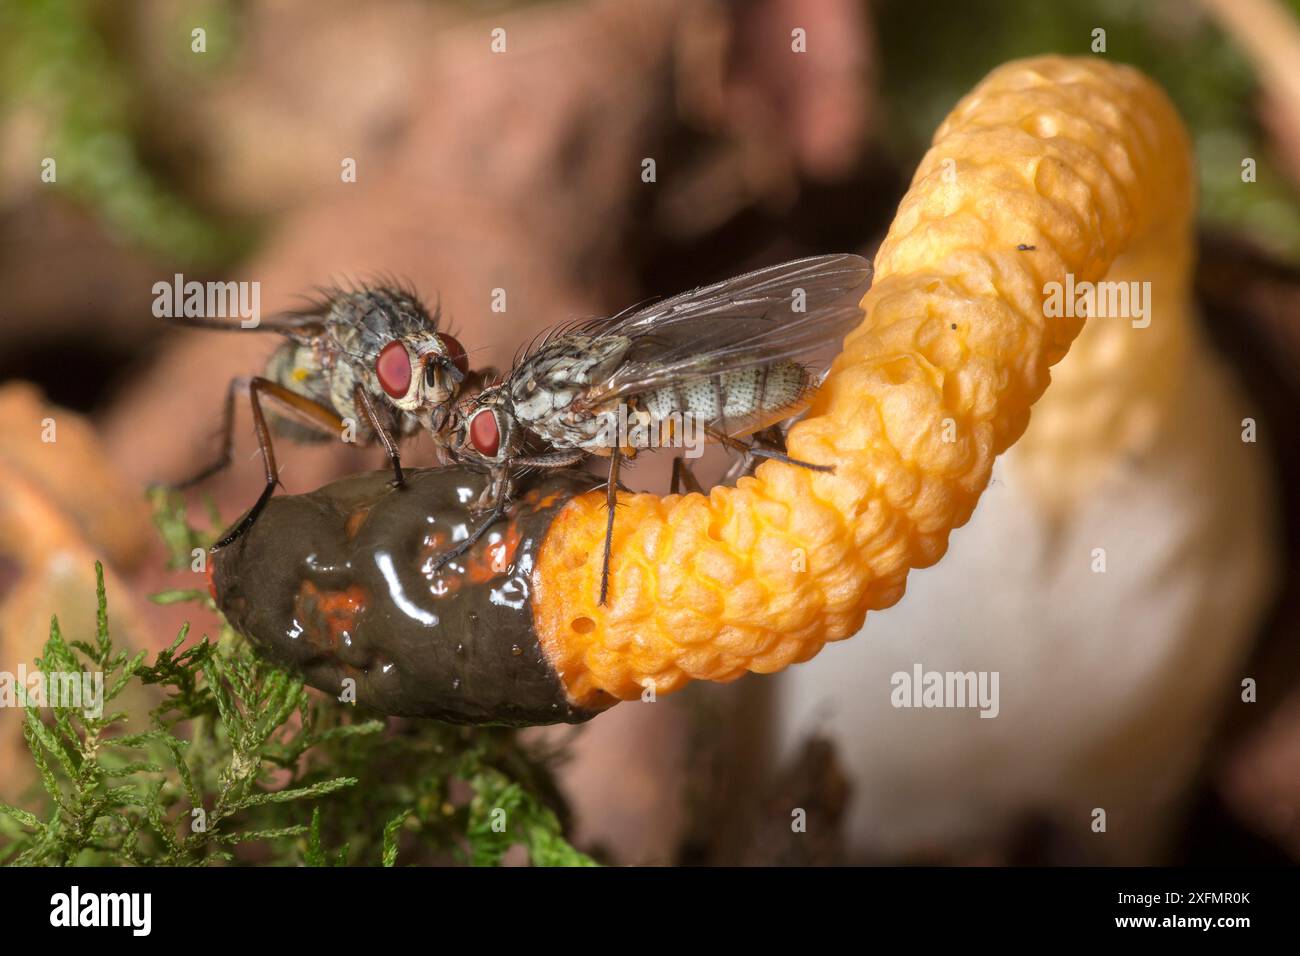 Champignon Stinkhorn de chien (Mutinus caninus) avec mouches se nourrissant de spores. Gait Barrows, Lancashire, Royaume-Uni. Octobre. Image empilée de mise au point. Banque D'Images